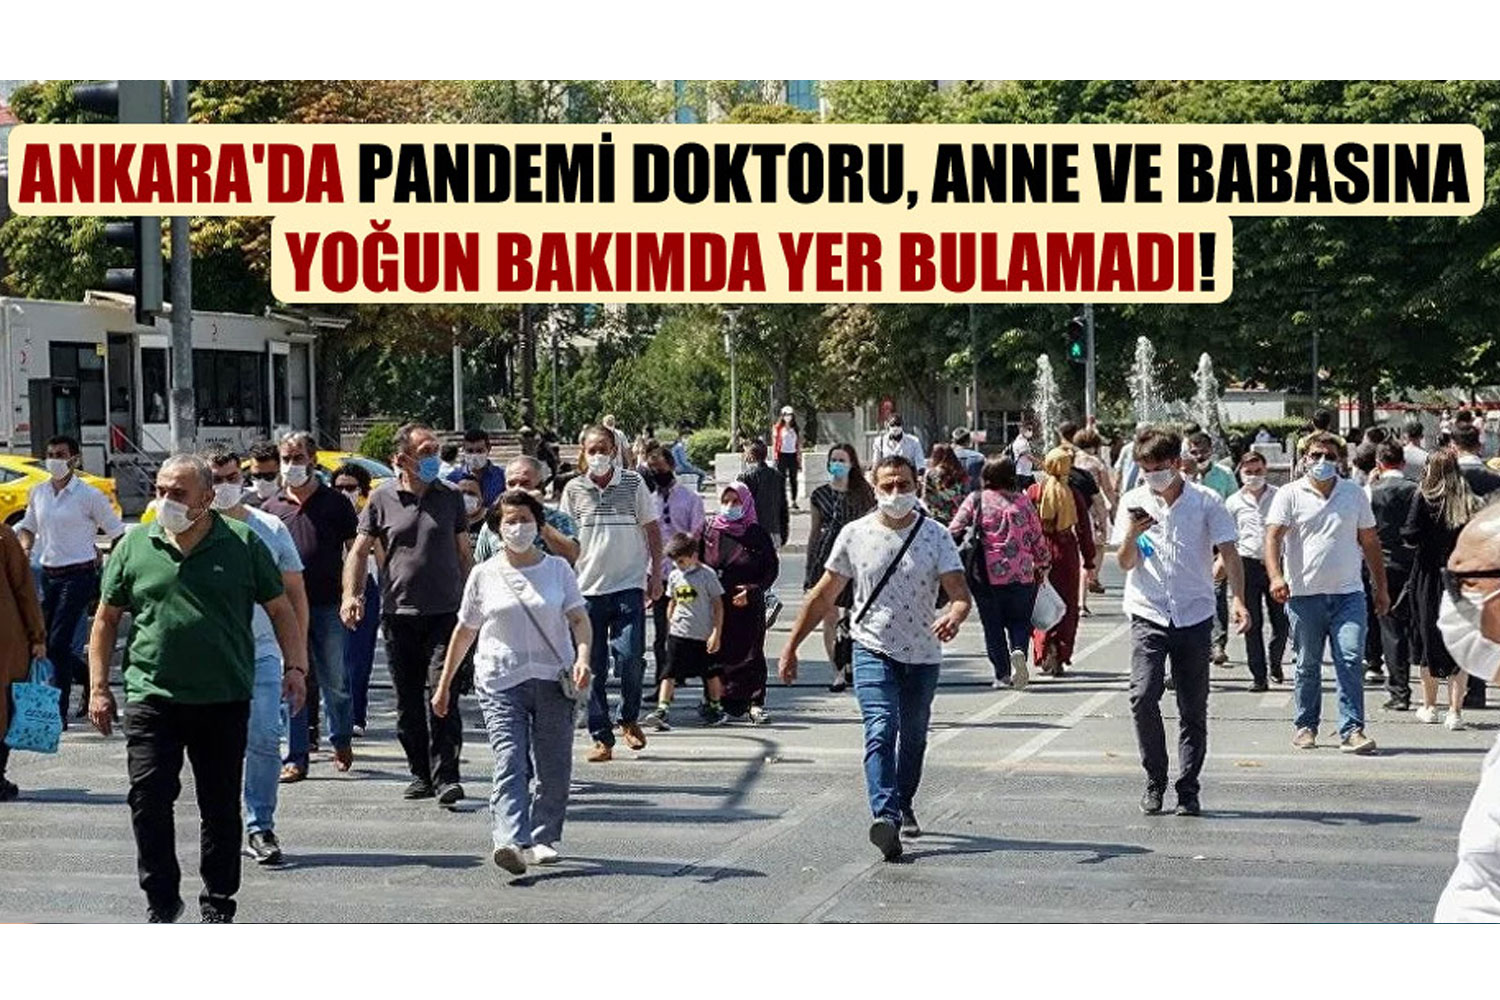 Ankara’da pandemi doktoru, anne ve babasına yoğun bakımda yer bulamadı!